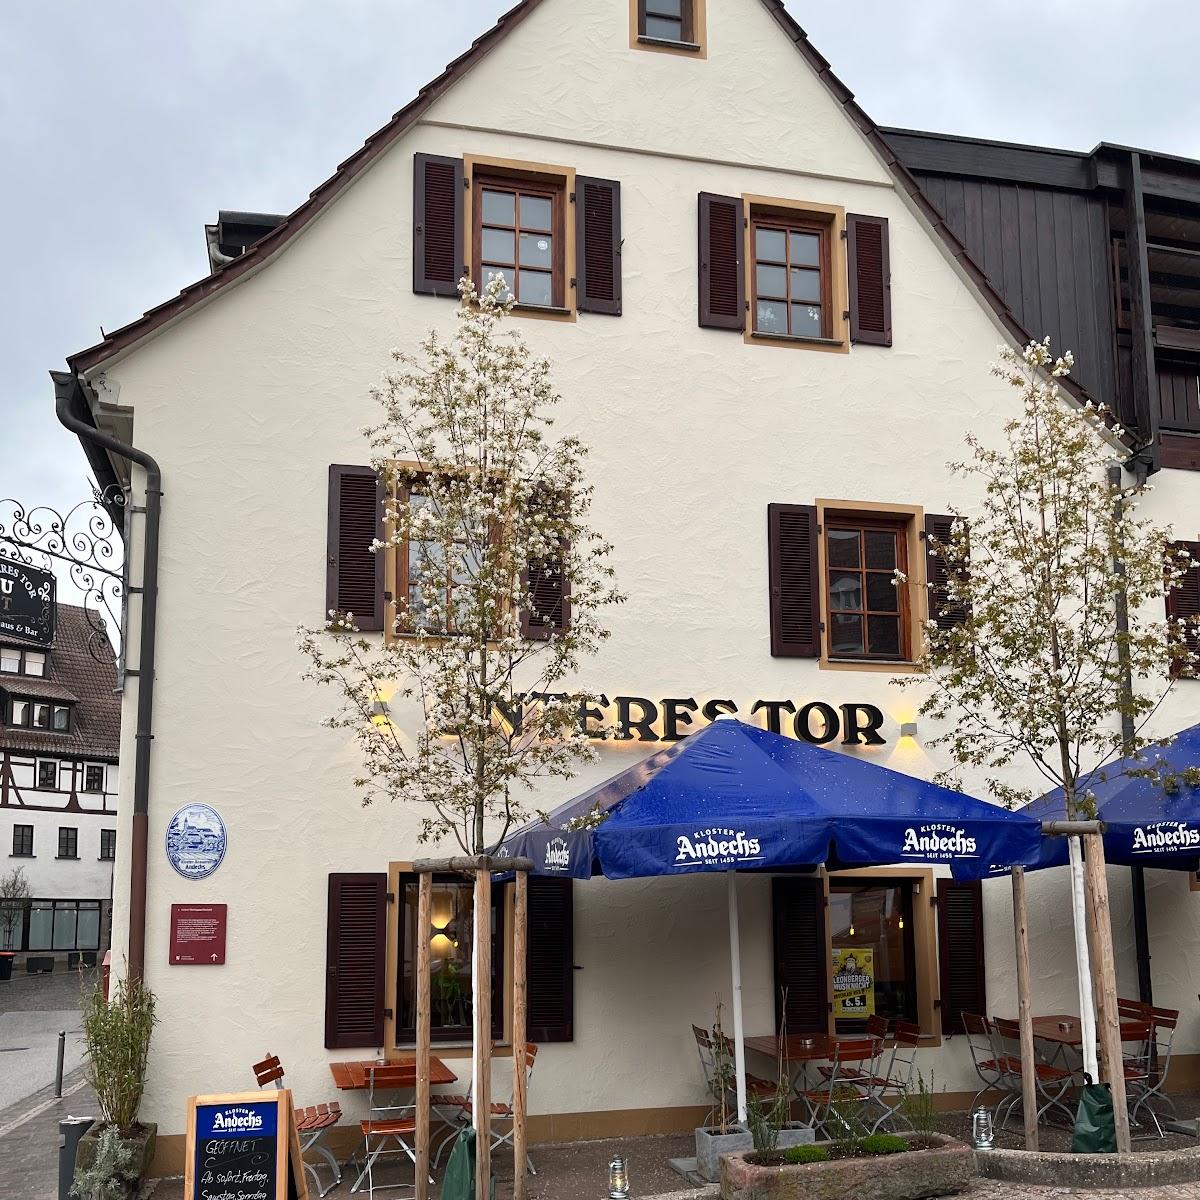 Restaurant "Unteres Tor - Wirtshaus & Bar" in Leonberg